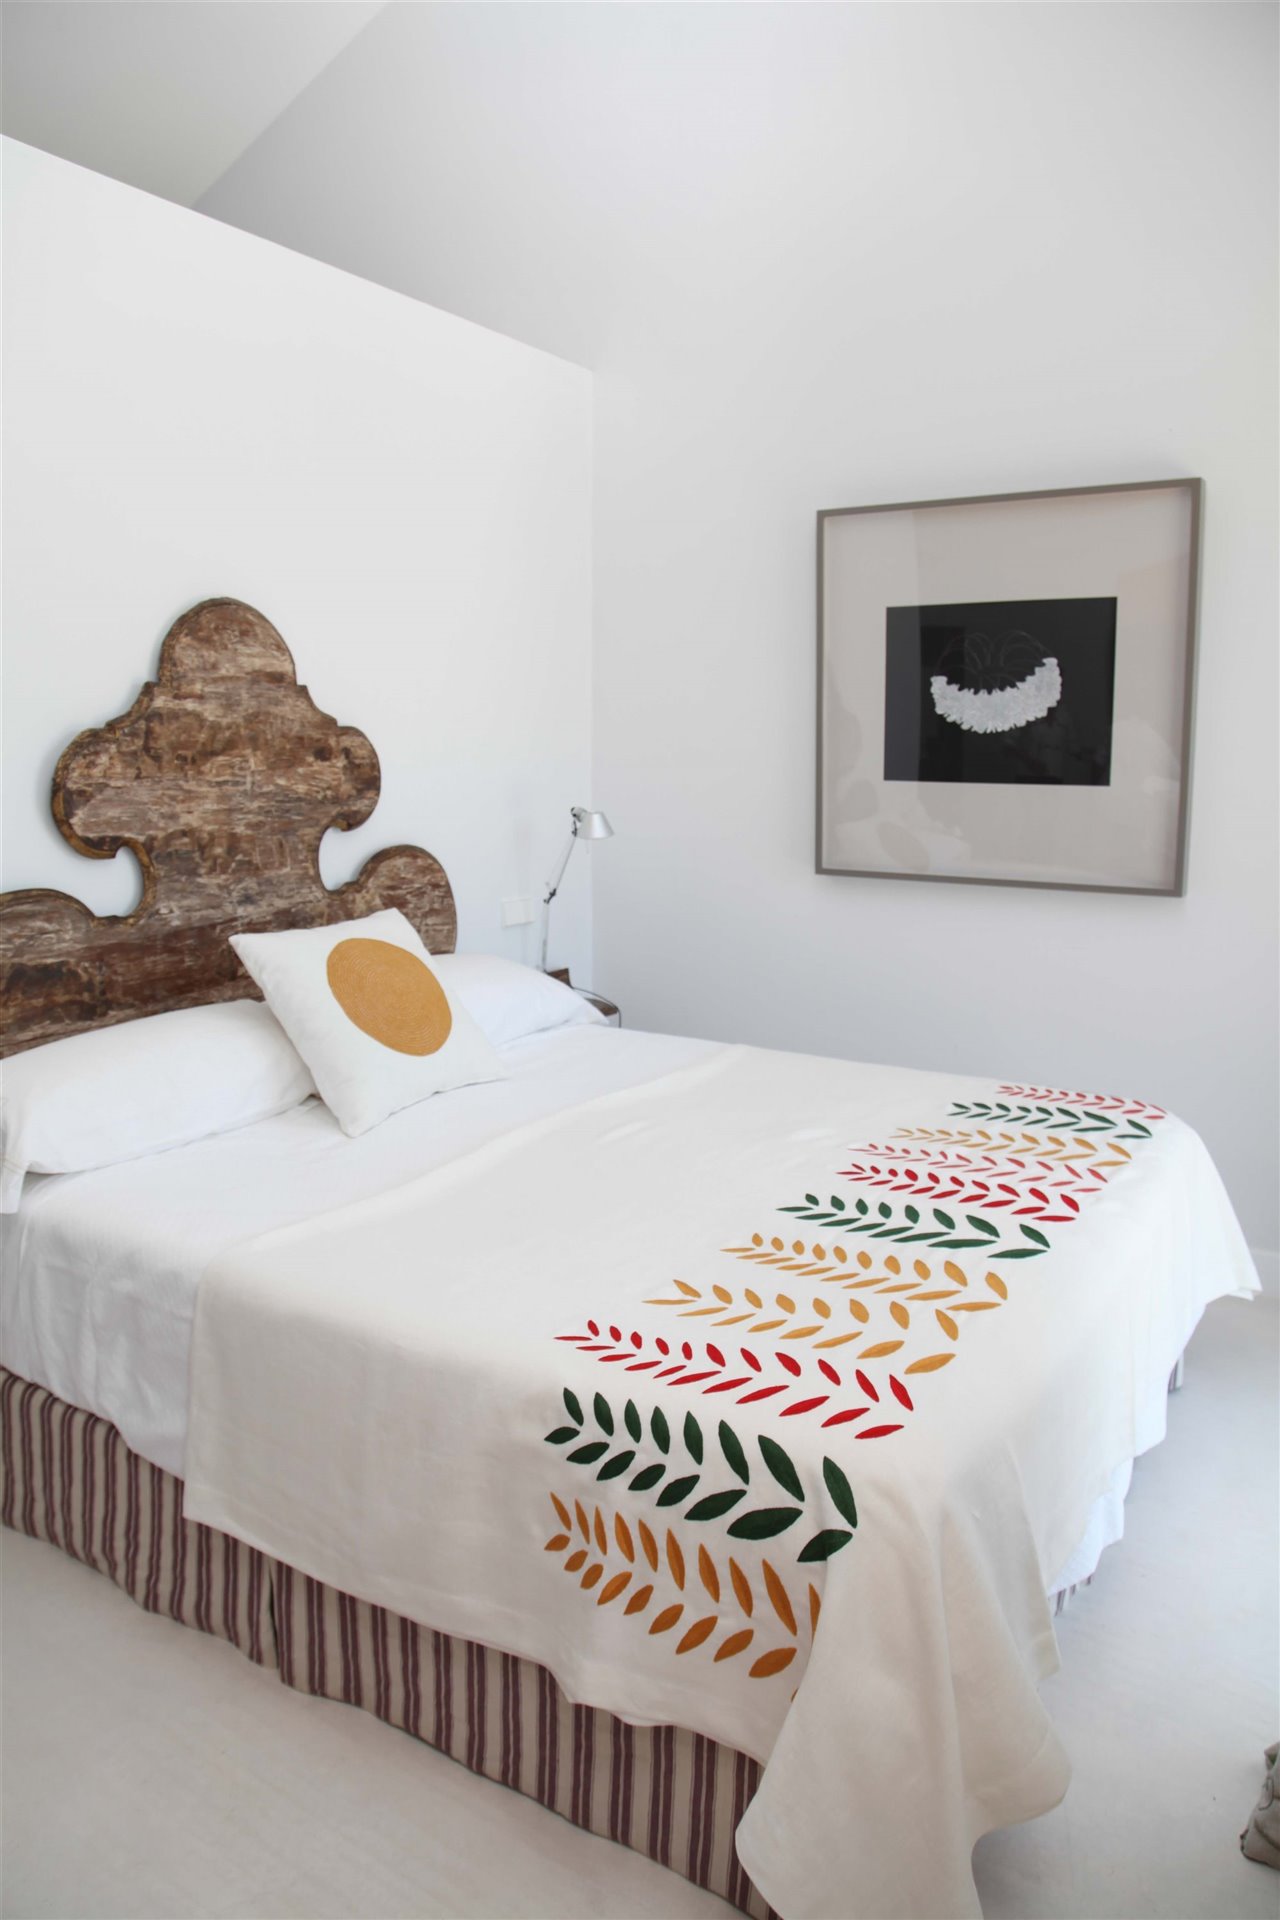 Colcha de cama con bordados artesanales.